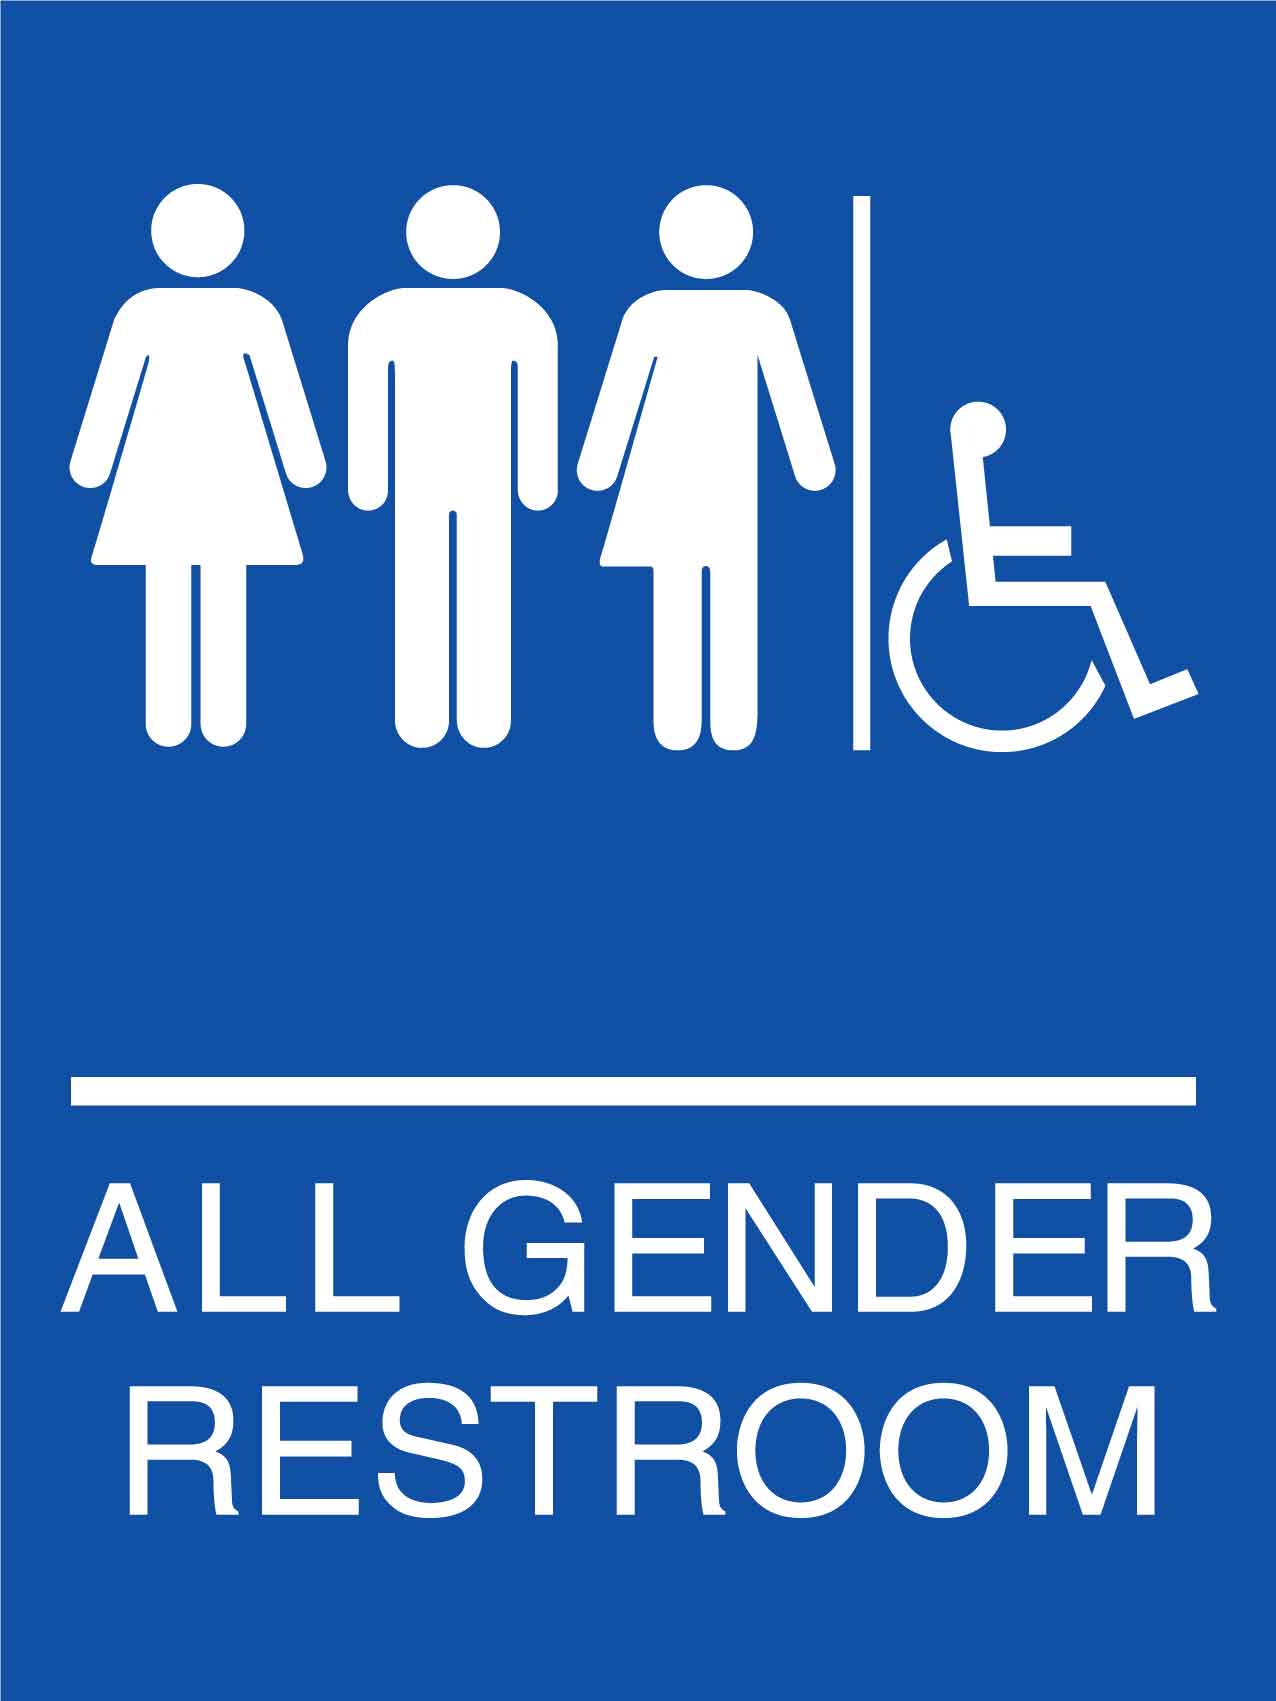 All Gender Disabled Restroom Sign